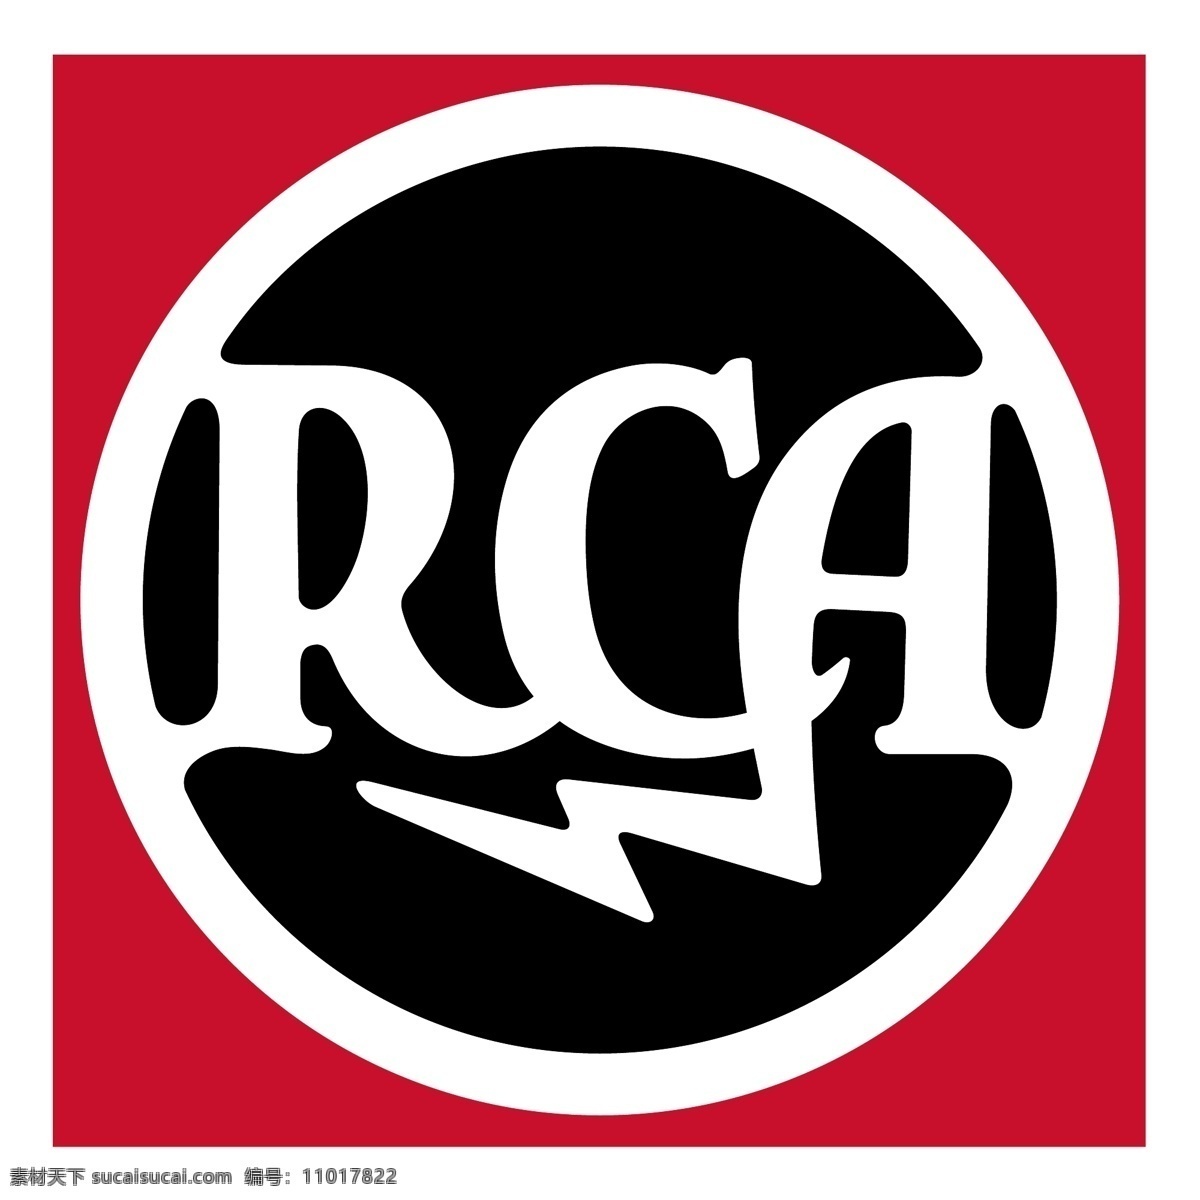 rca 向量 标识 立体声 cd 播放机 标志 矢量 矢量rca 播放器 rca向量 夹 rca自由 rca立体声 矢量图 建筑家居